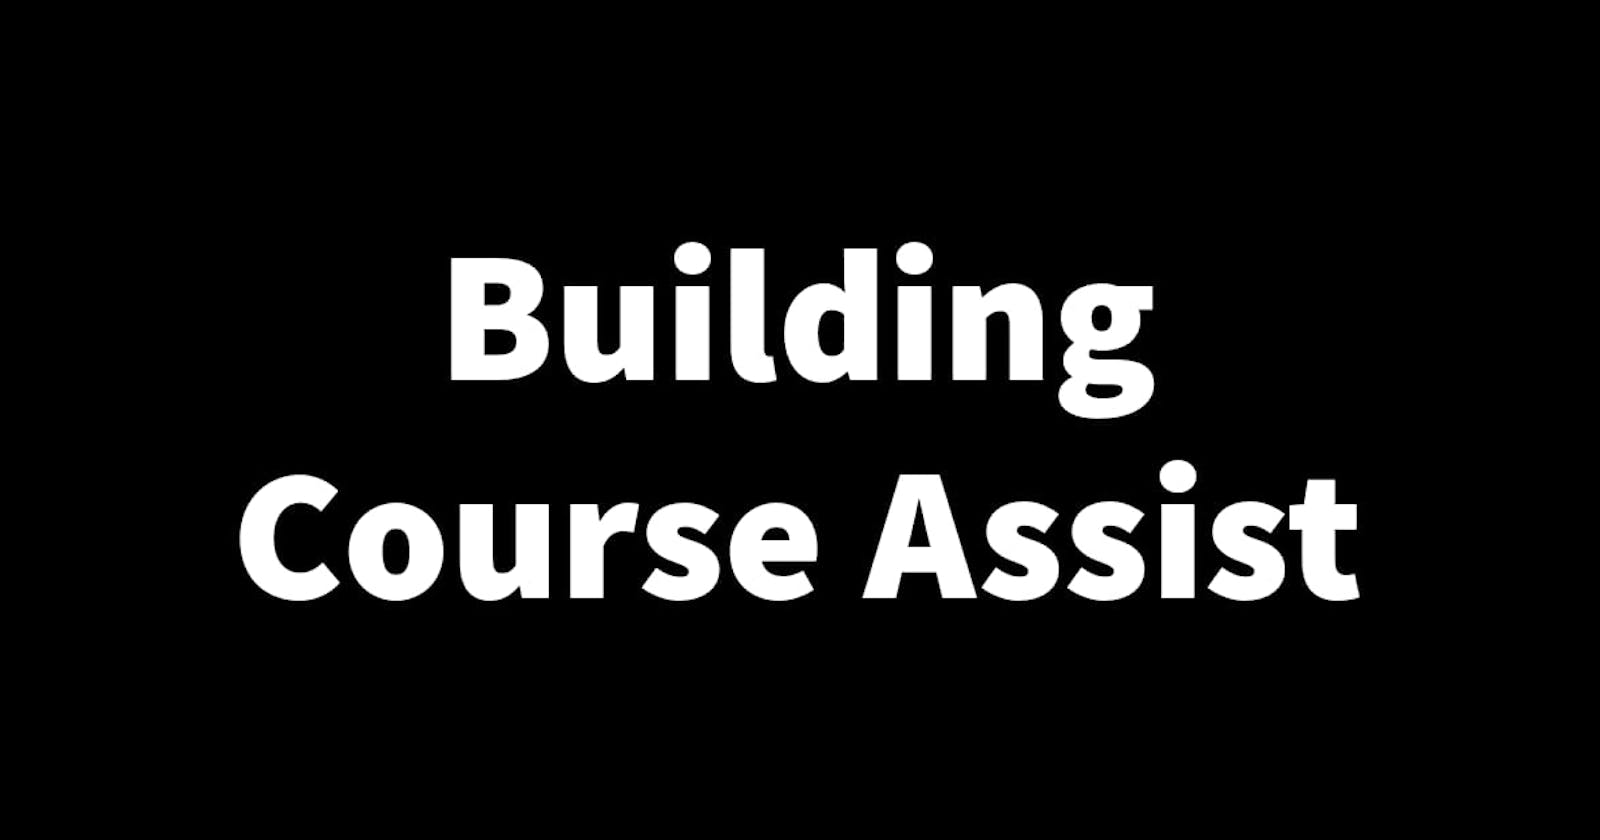 Building Course Assist Part 10: Building the Course Assist landing page.